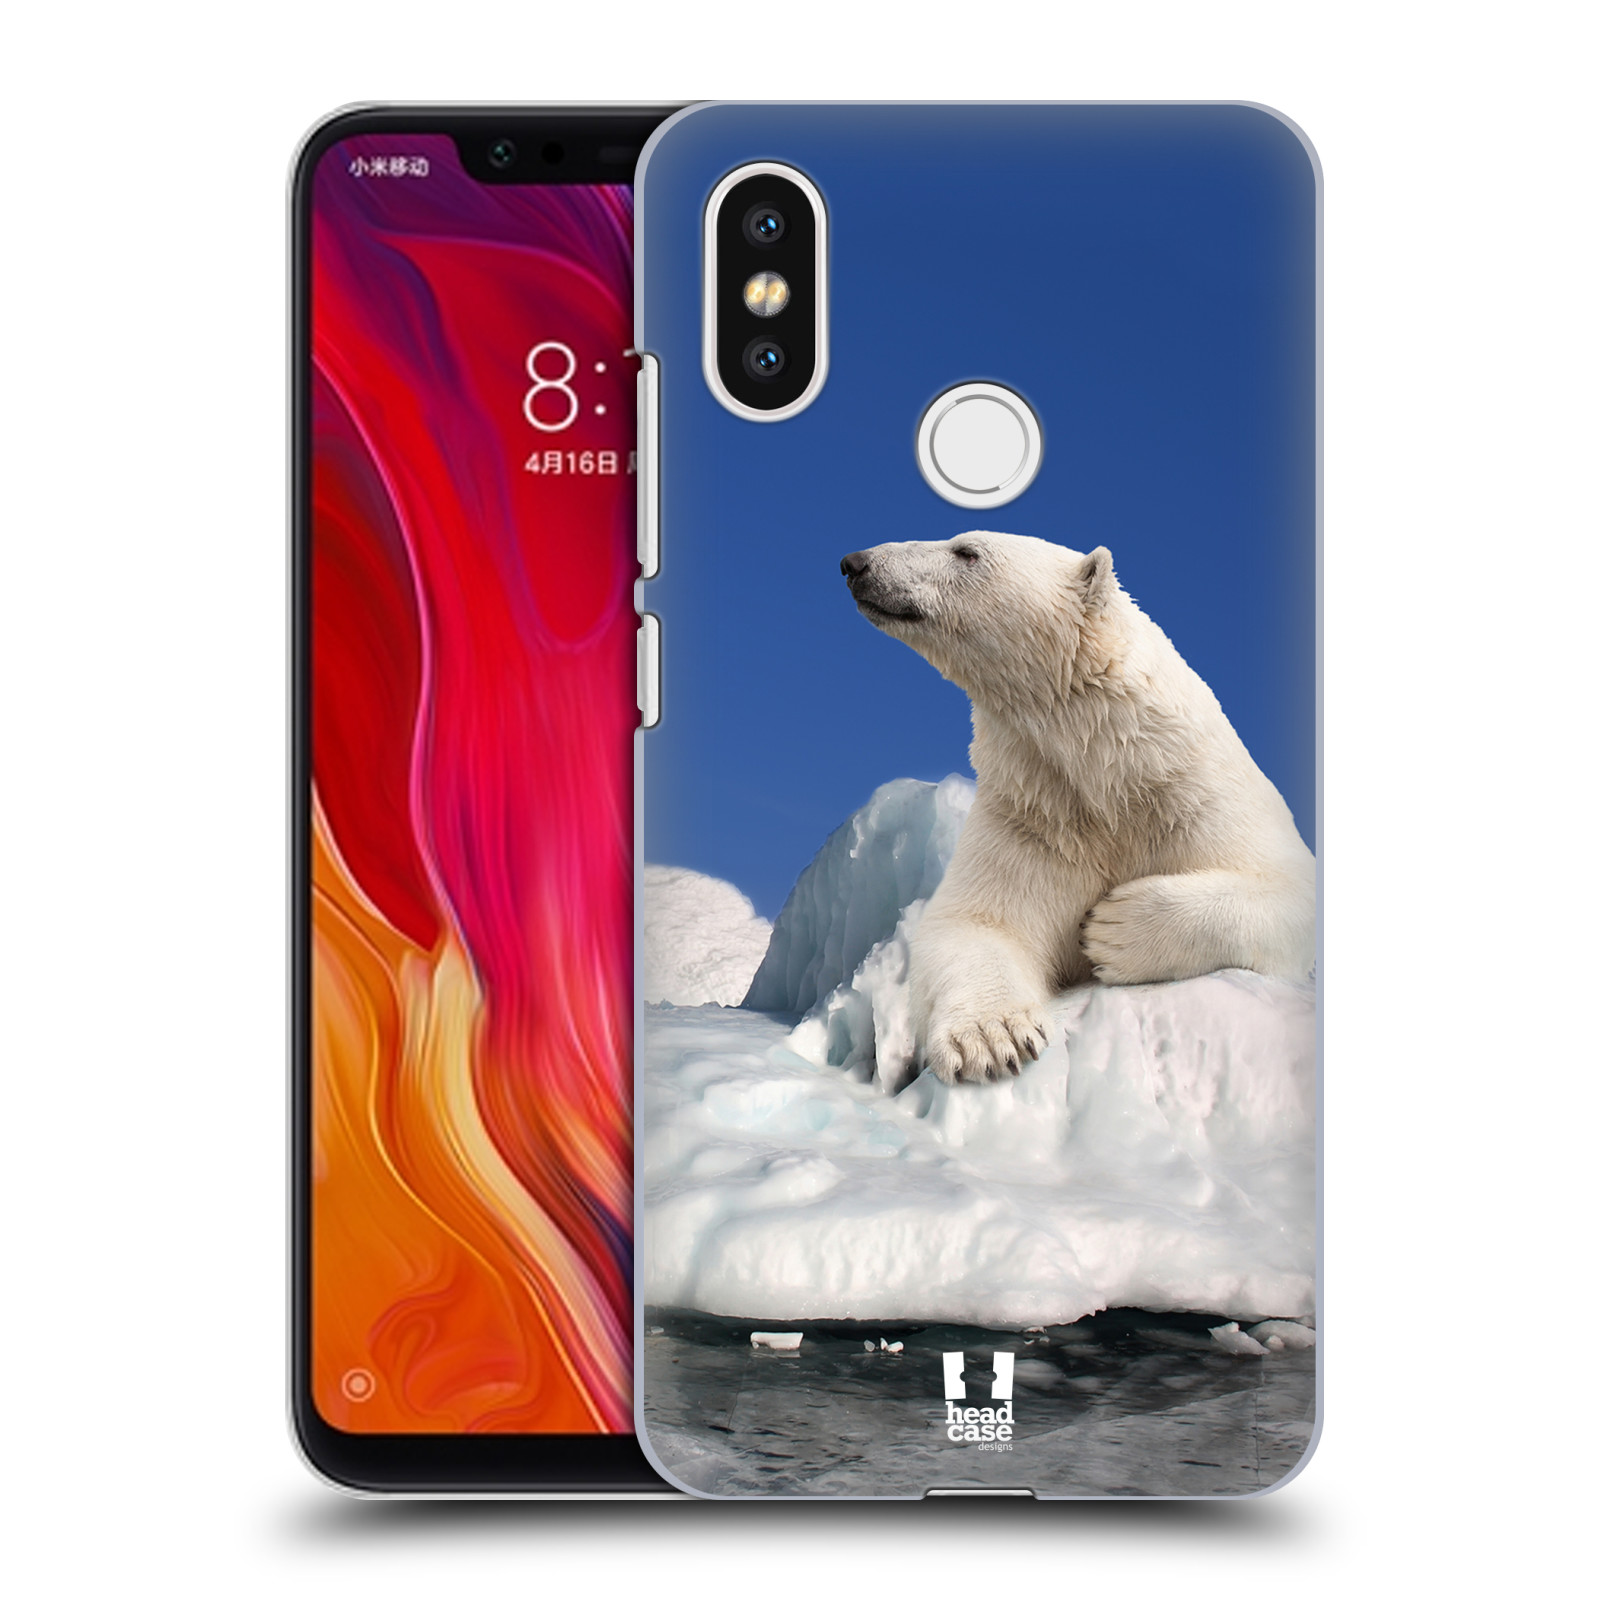 HEAD CASE plastový obal na mobil Xiaomi Mi 8 vzor Divočina, Divoký život a zvířata foto LEDNÍ MEDVĚD NA LEDOVCI A NEBE MODRÁ